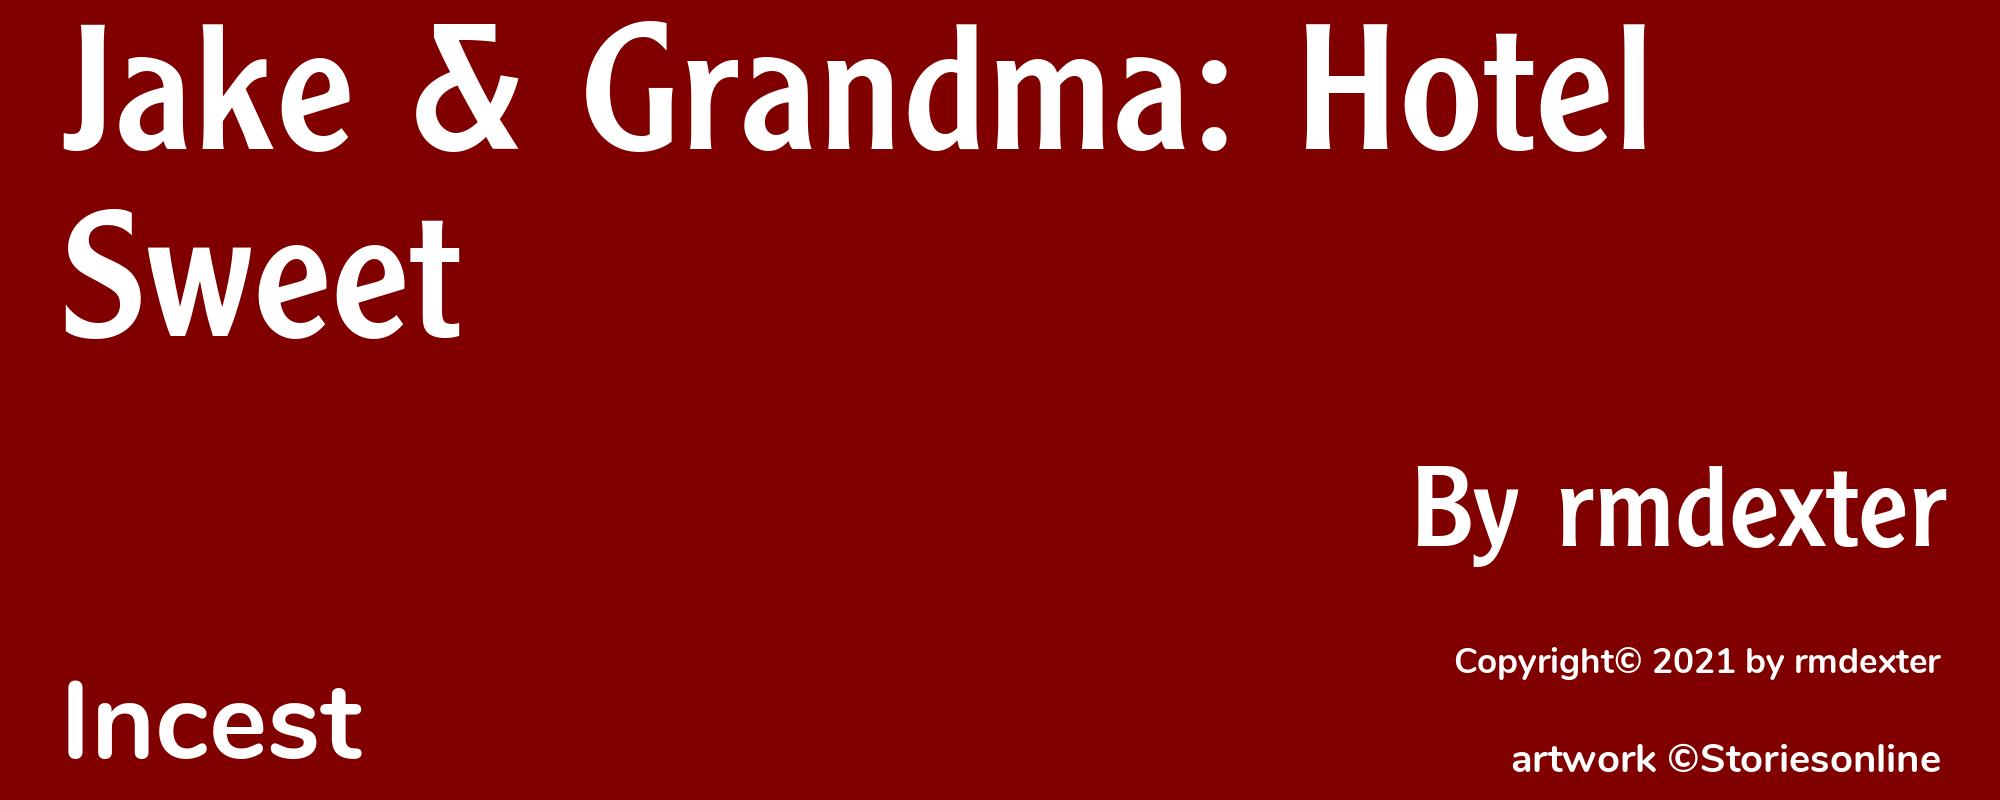 Jake & Grandma: Hotel Sweet - Cover